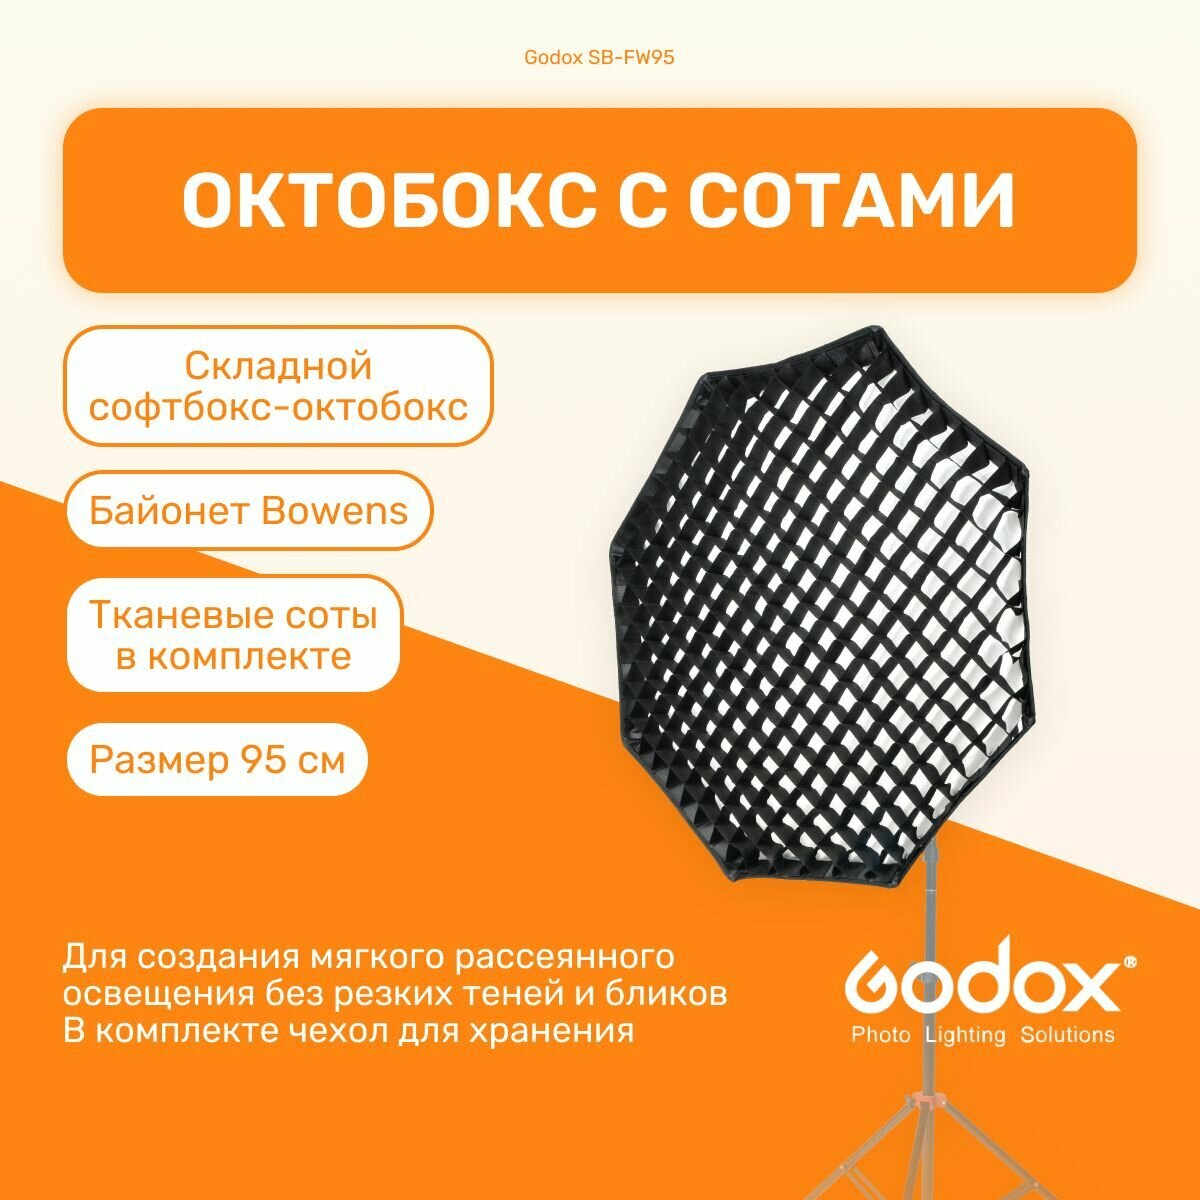 Софтбокс Godox SB-FW95 октобокс с сотами, 95 см, для вспышек и светодиодных осветителей с байонетом Bowens, студийный свет